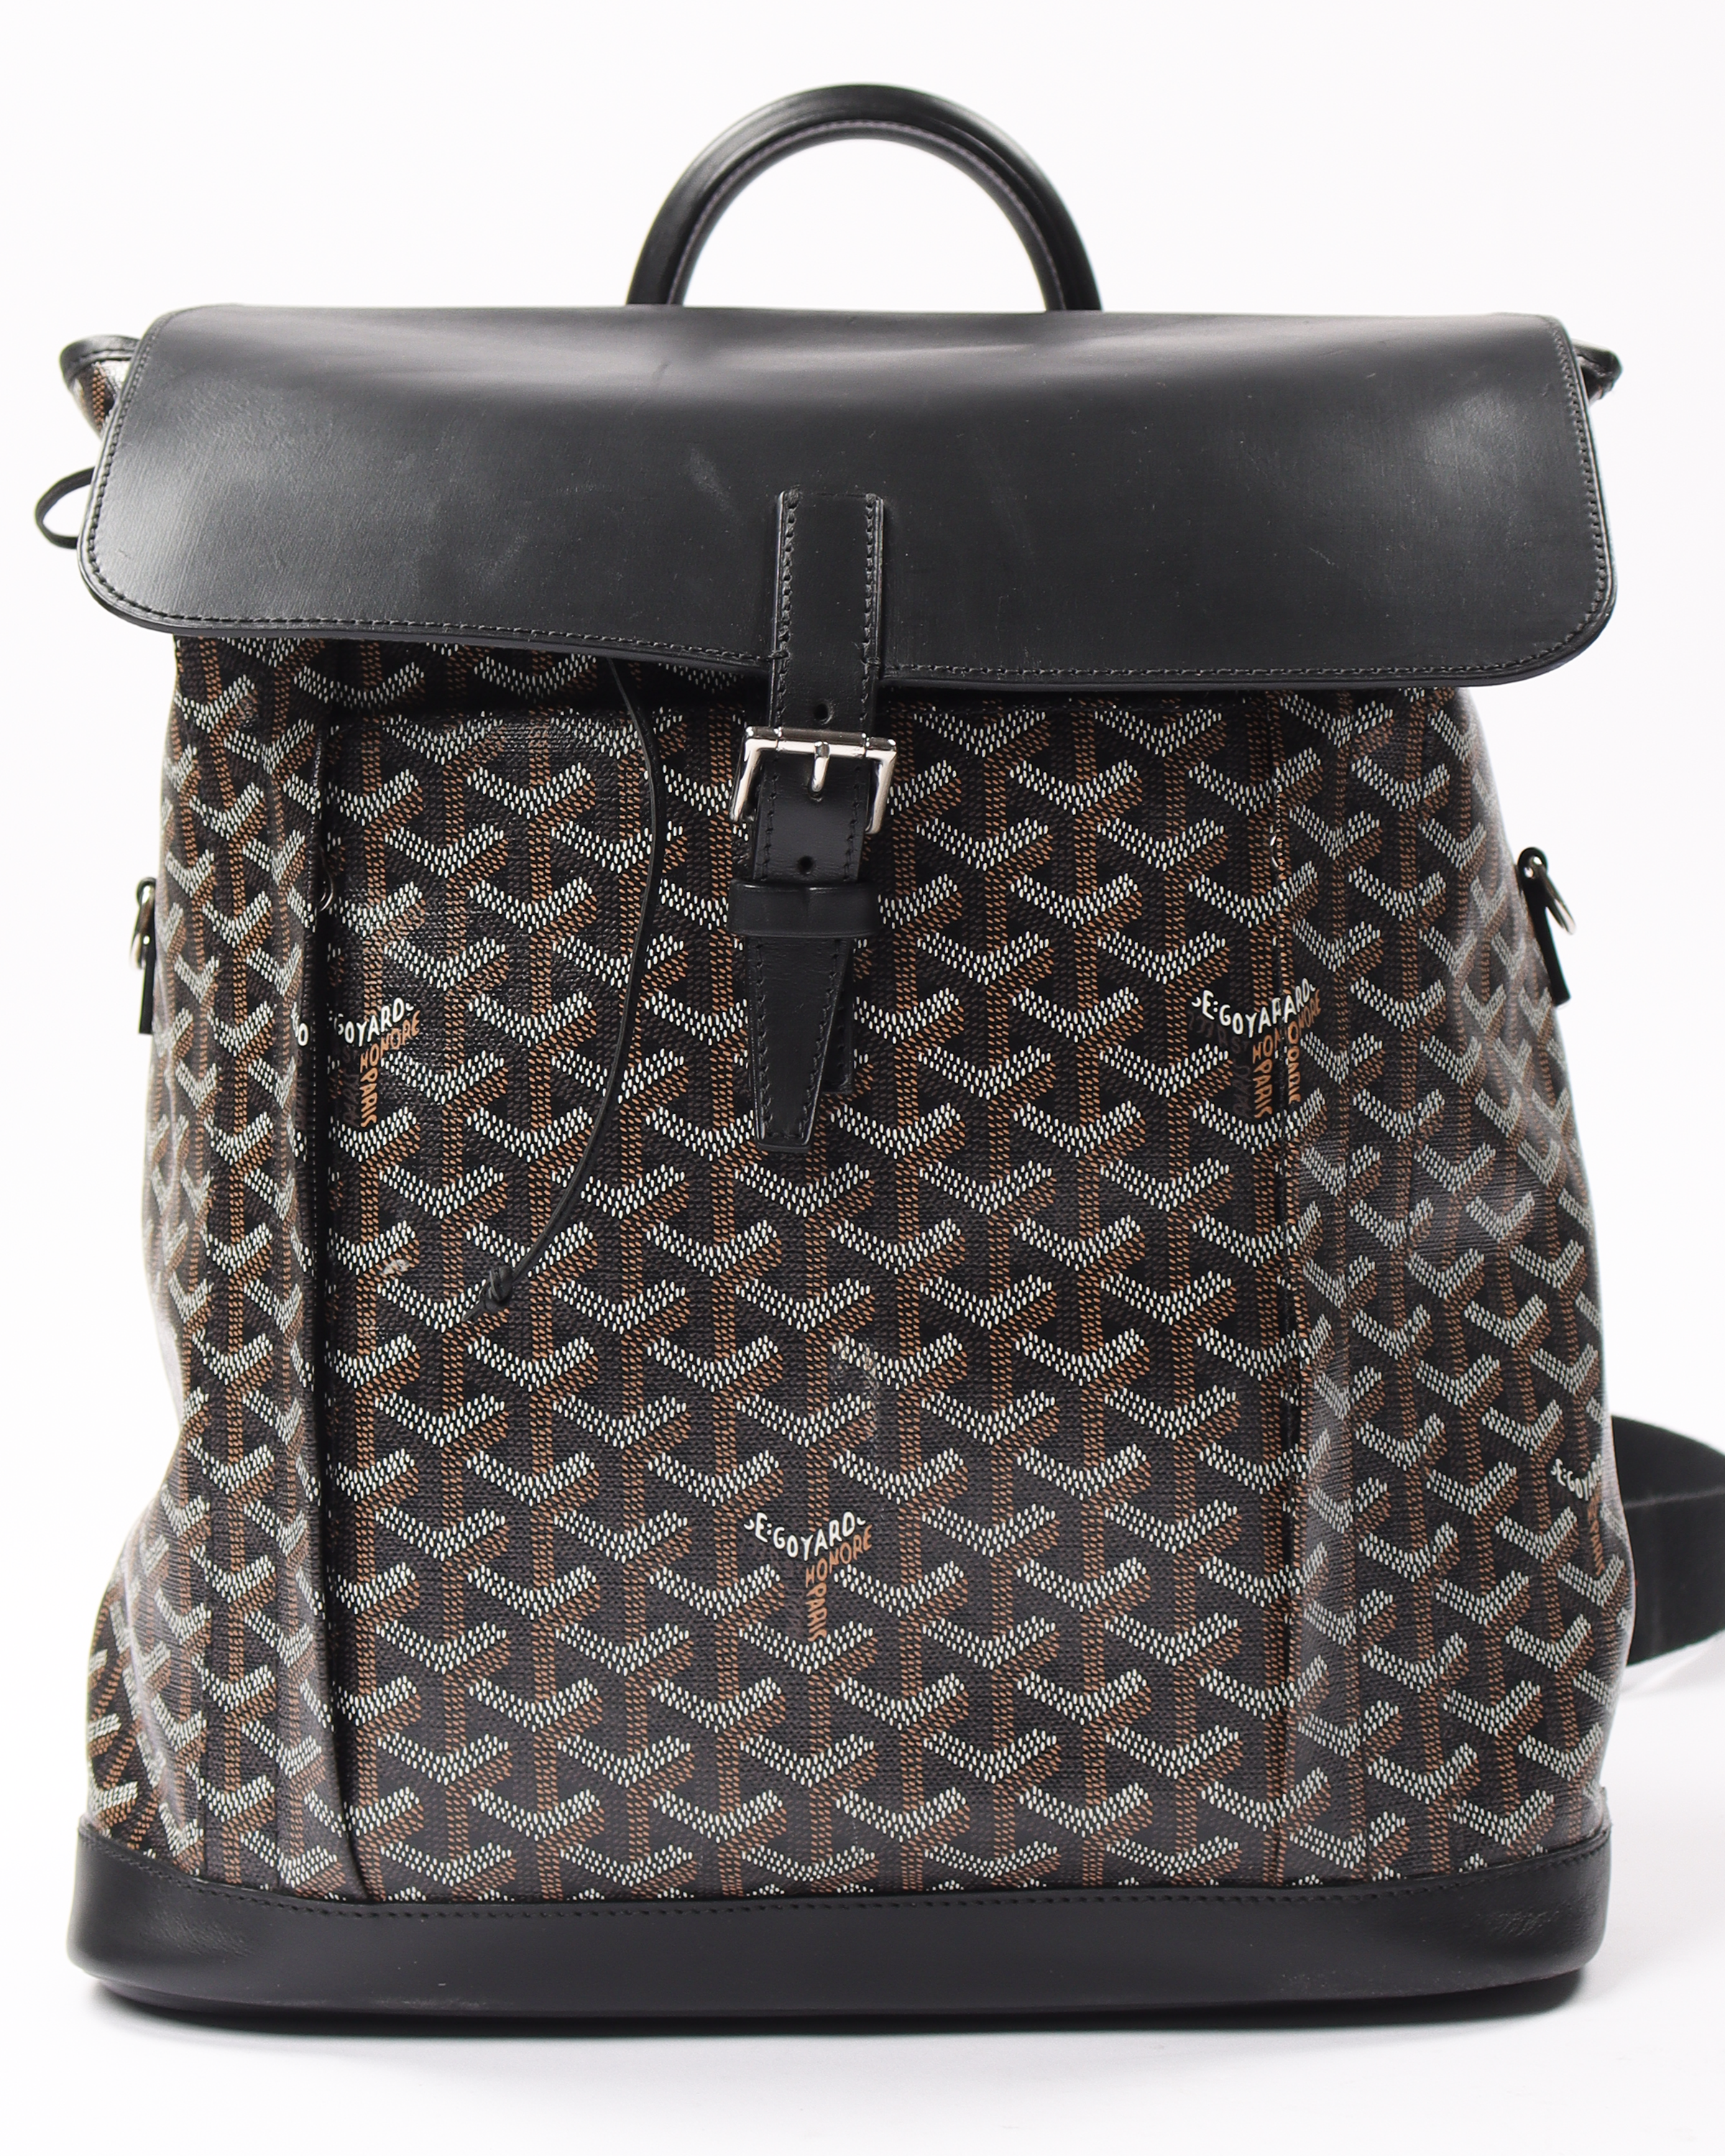 Goyard Alpin Backpack Goyardine Black/Tan in Goyardine/Calfskin